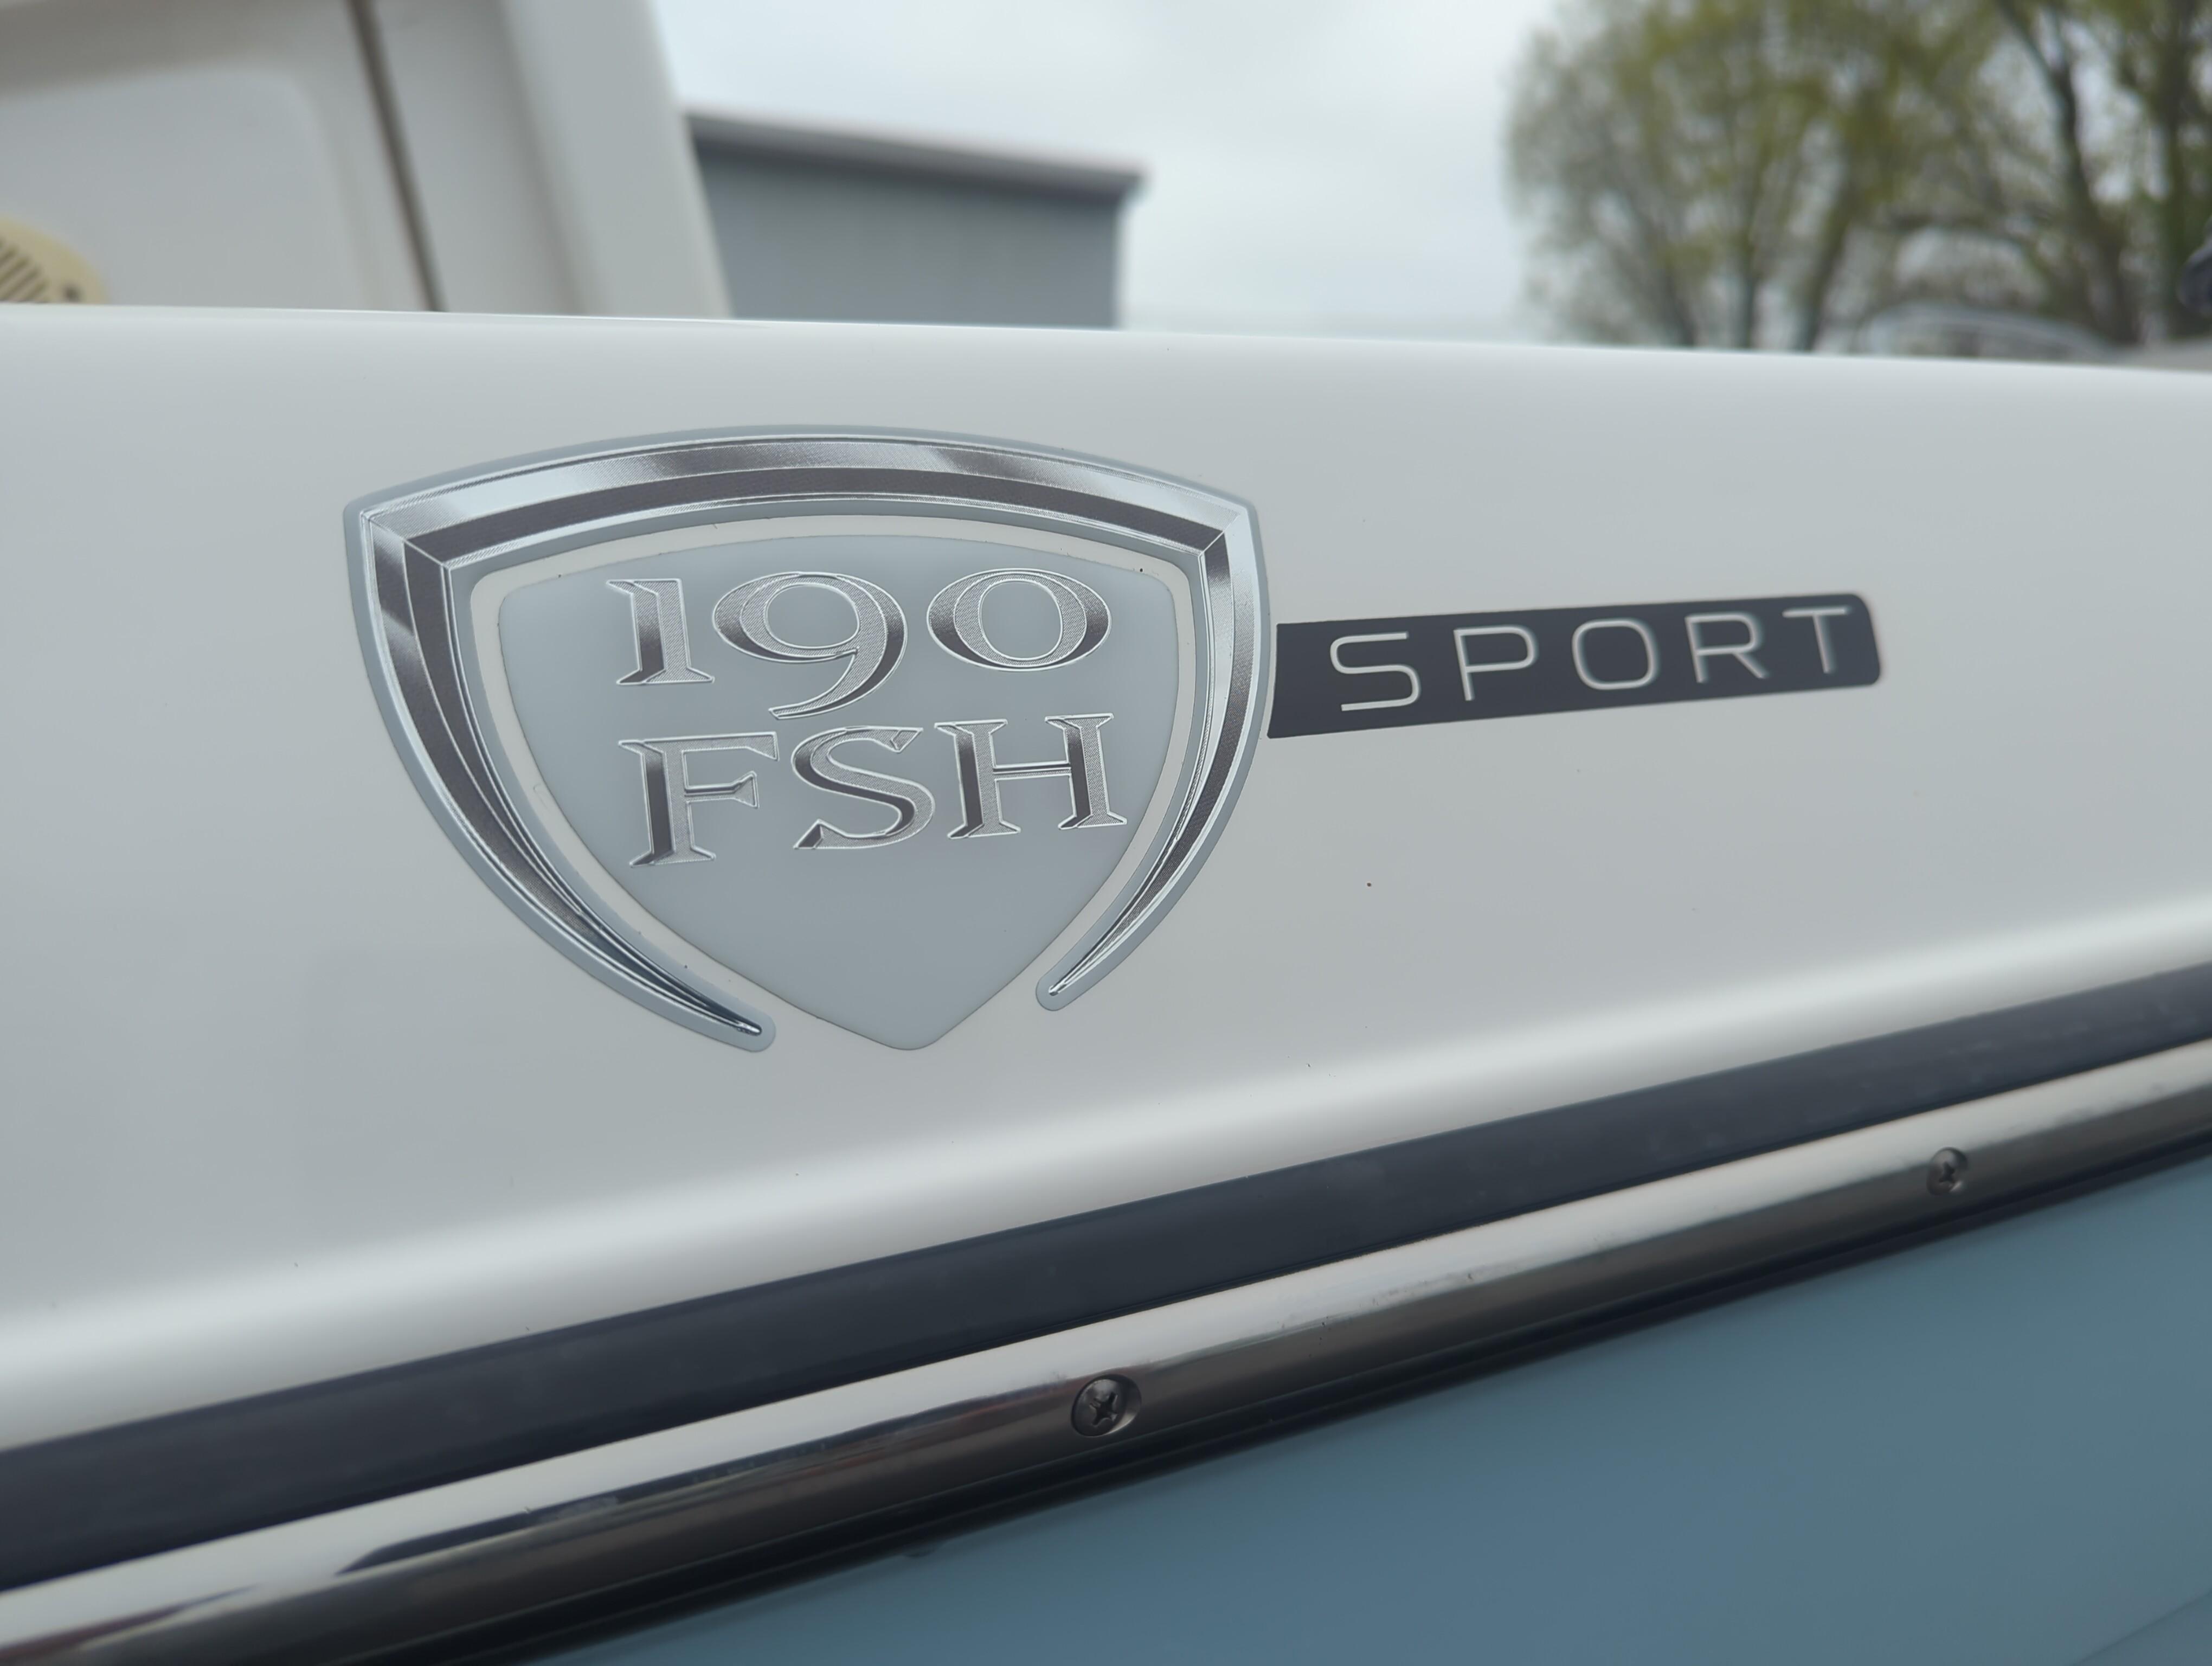 2019 Yamaha Boats 190 FSH Sport